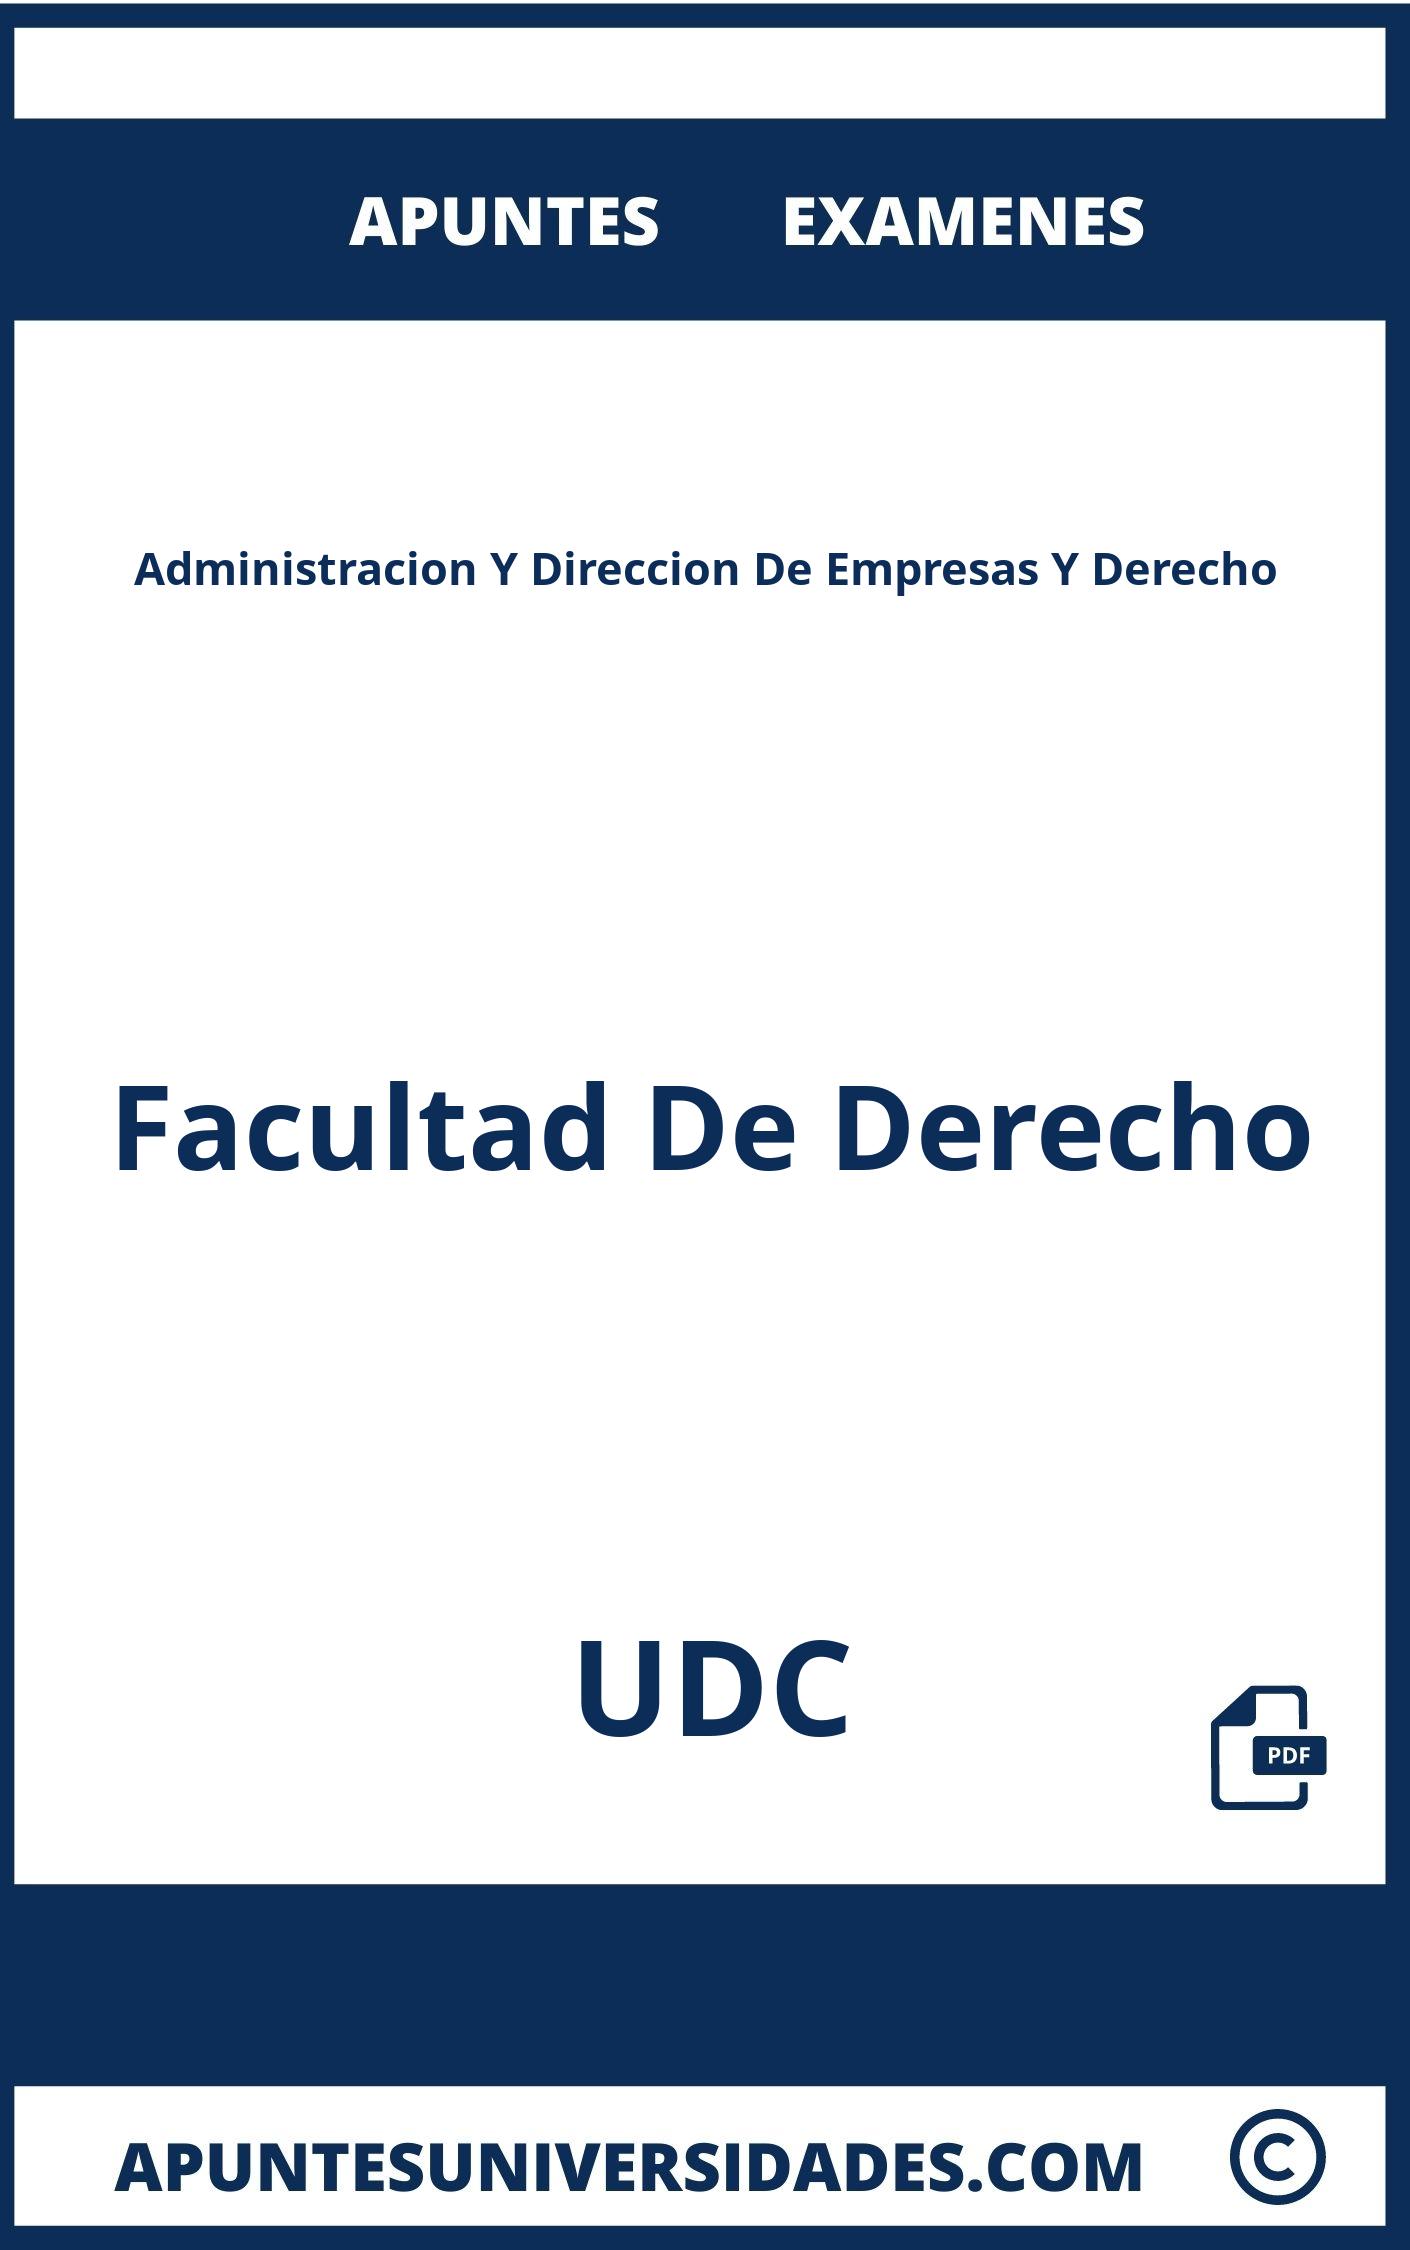 Administracion Y Direccion De Empresas Y Derecho UDC Apuntes Examenes